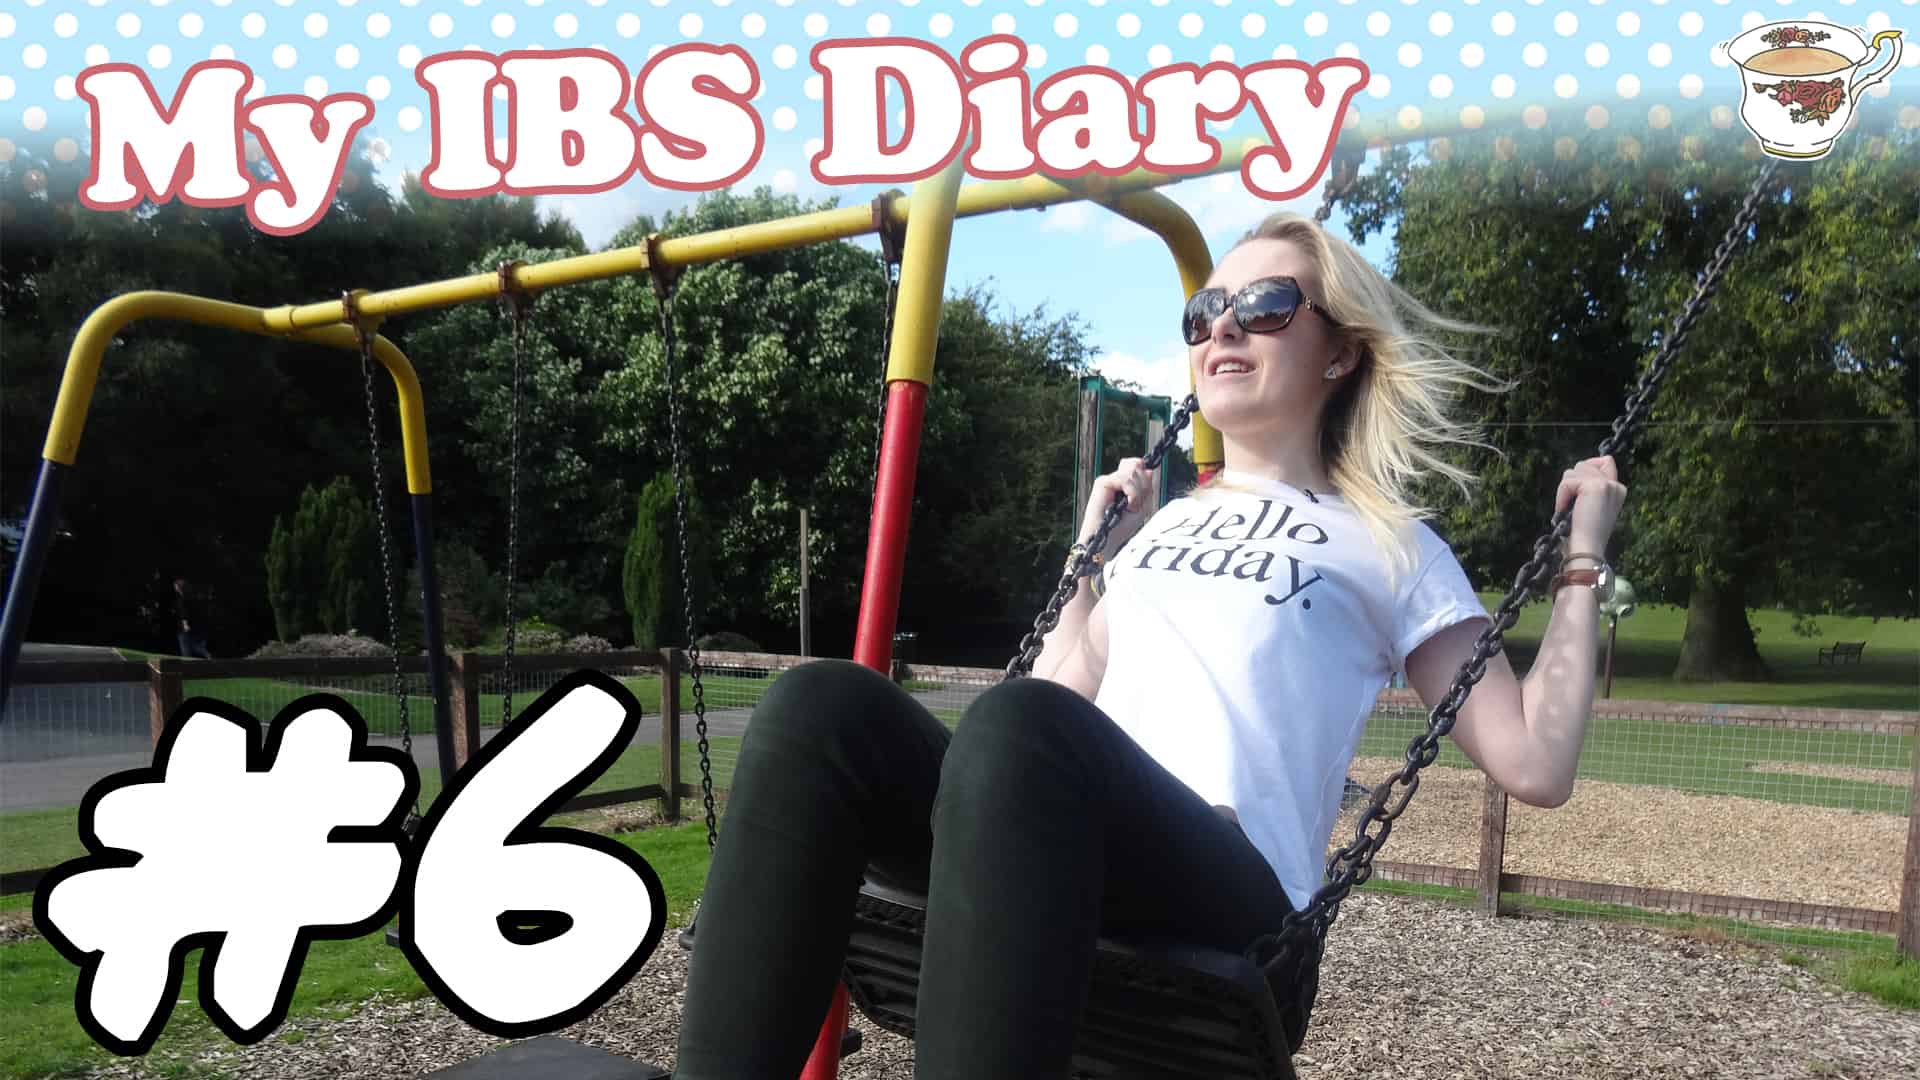 ibs diary week 6